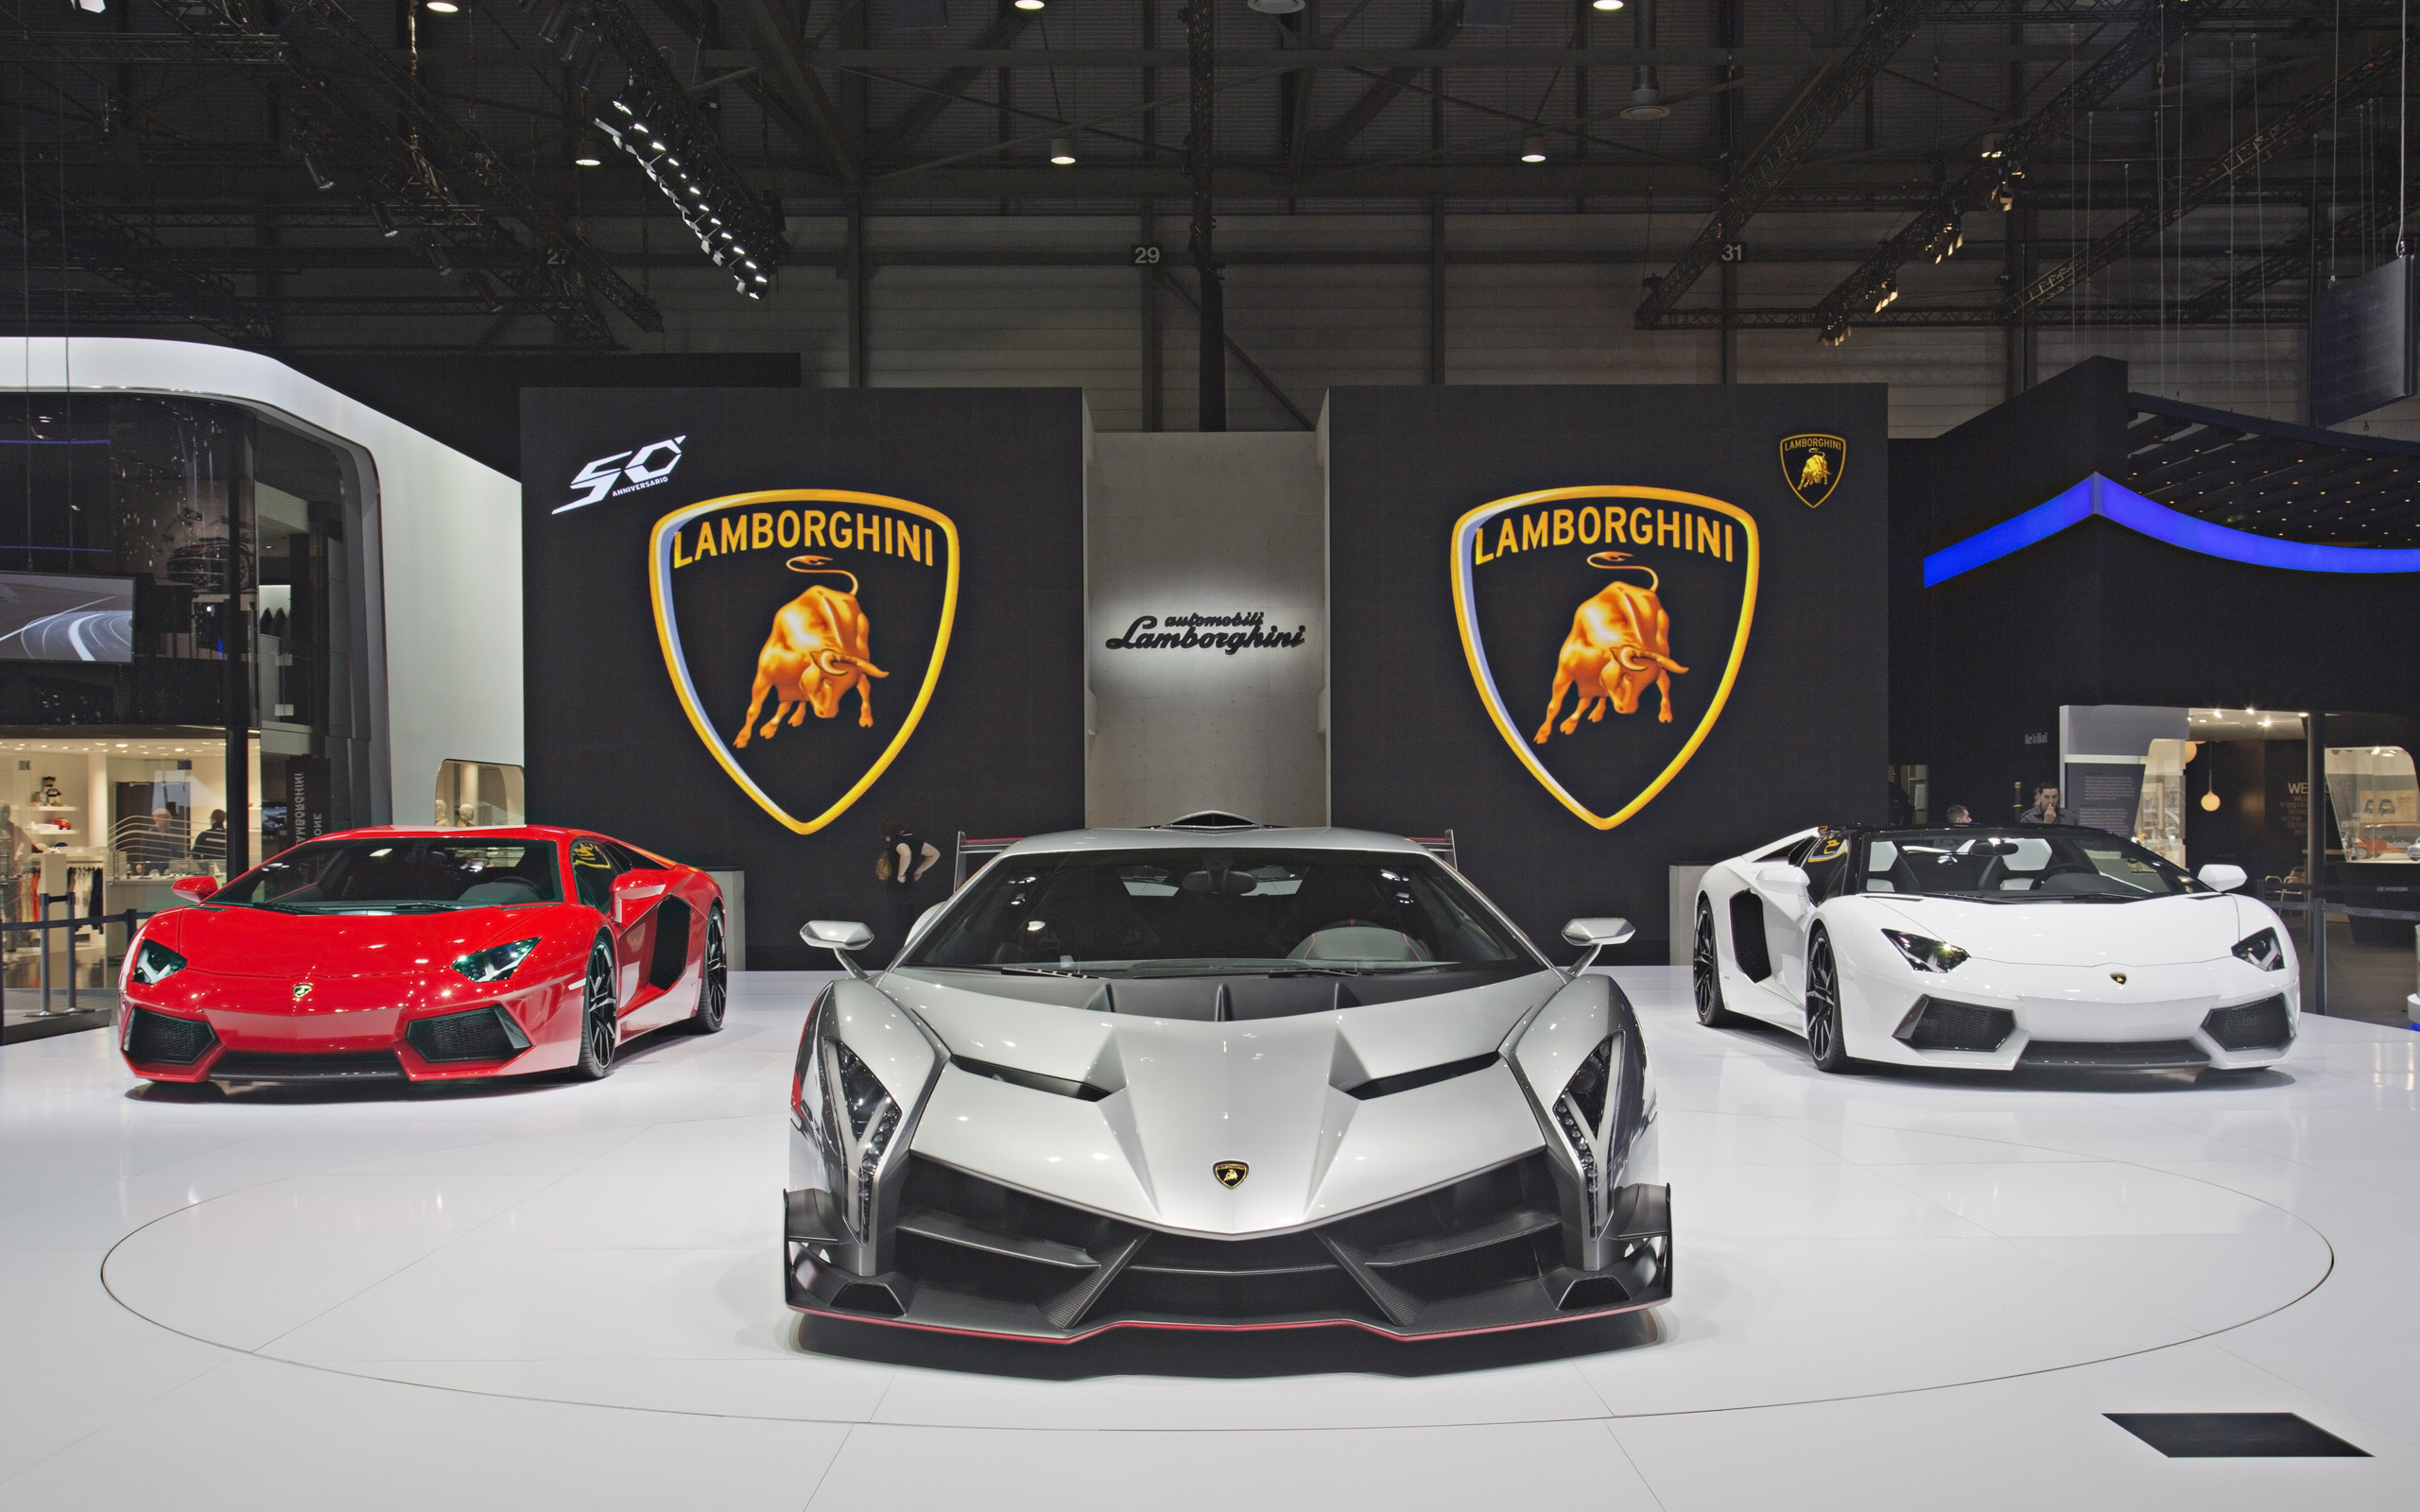 2013 Lamborghini Veneno Geneva Motor Show Wallpaper | HD ...